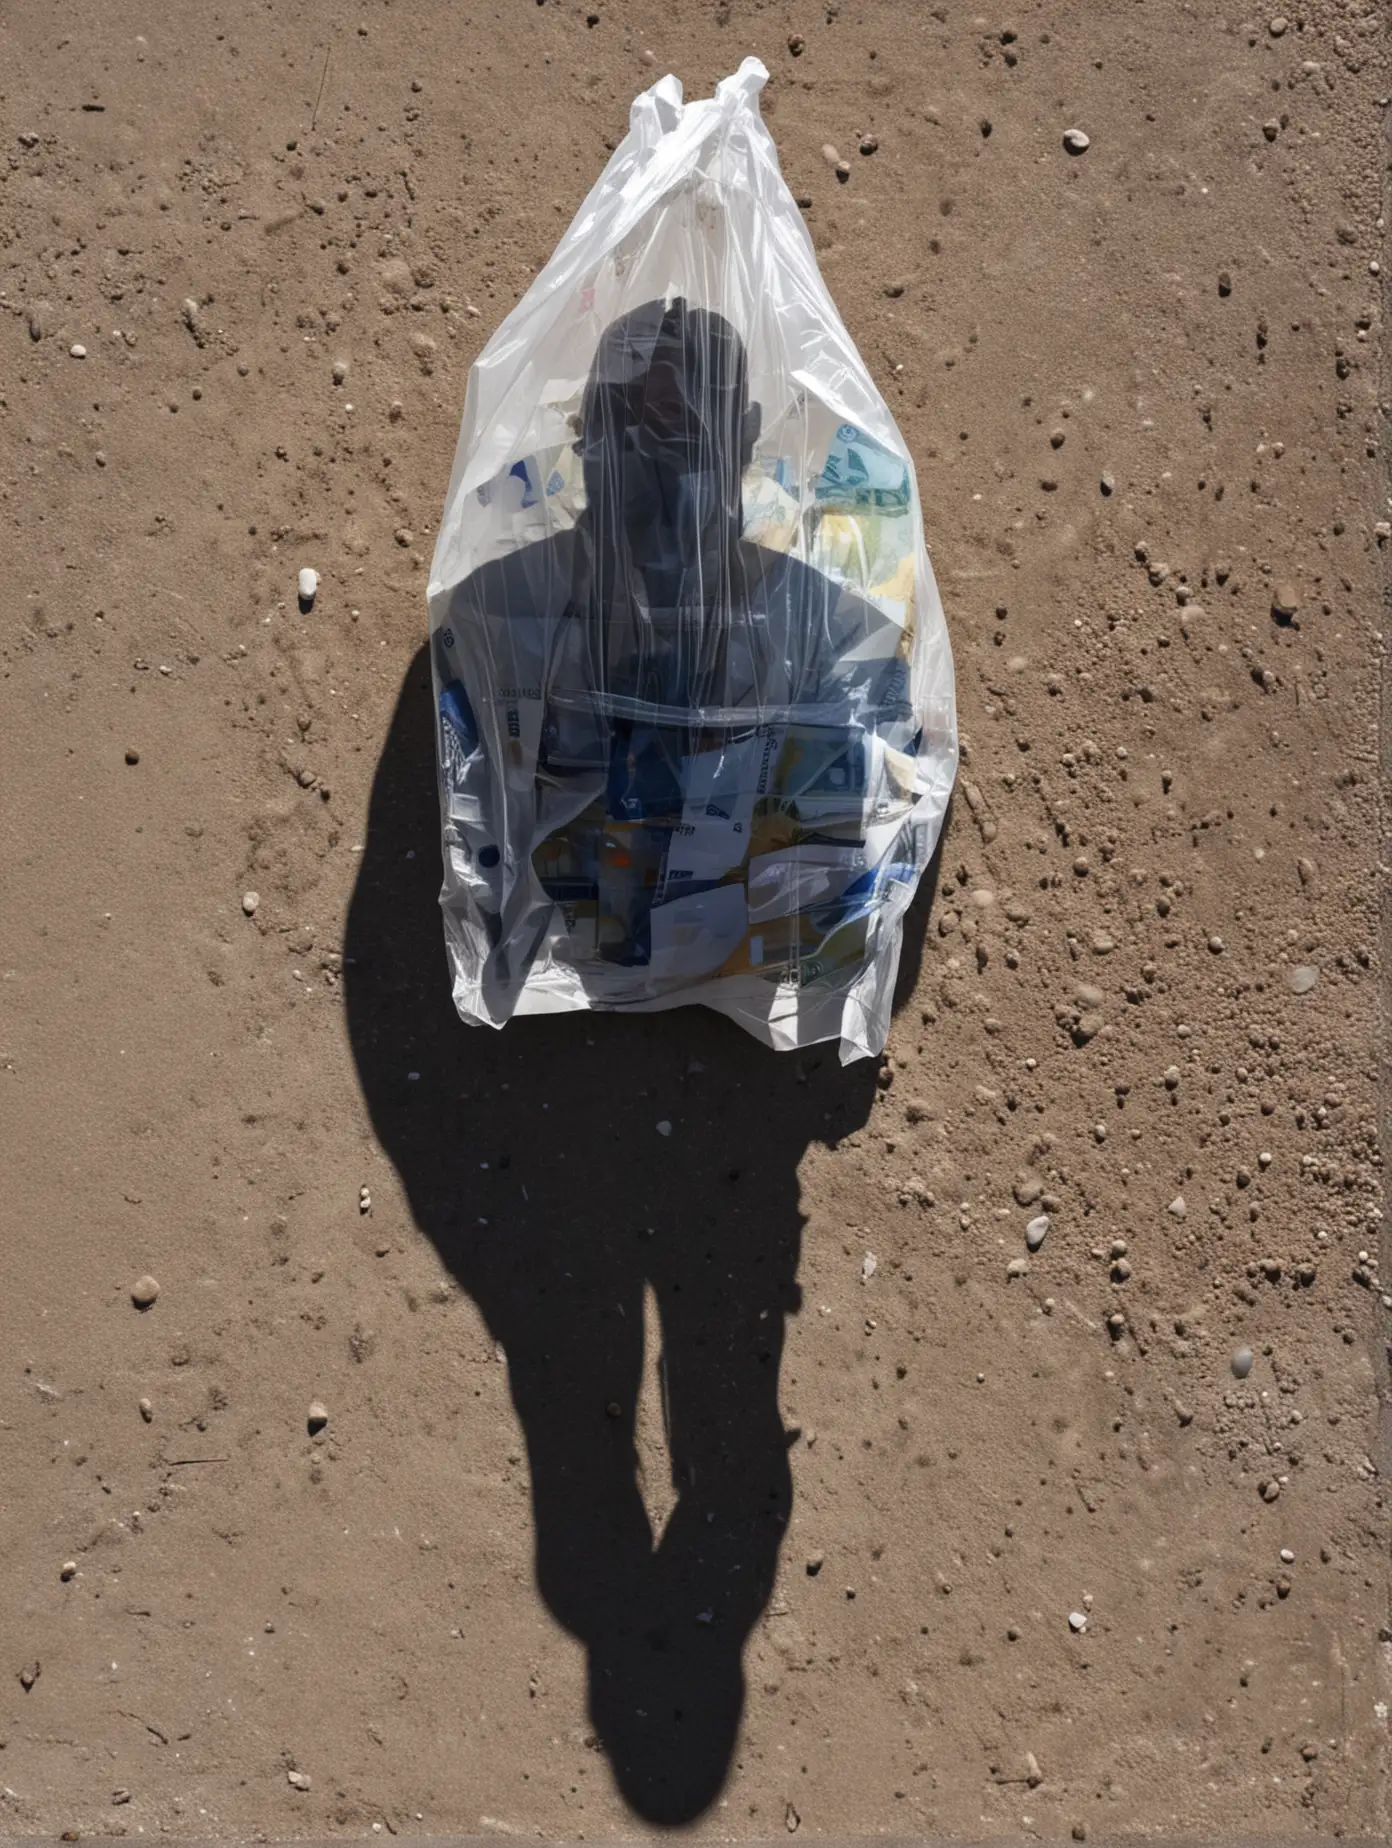 1er plan un sac plastique rempli d'euros la nuit 
2 ème plan une ombre d'une personne